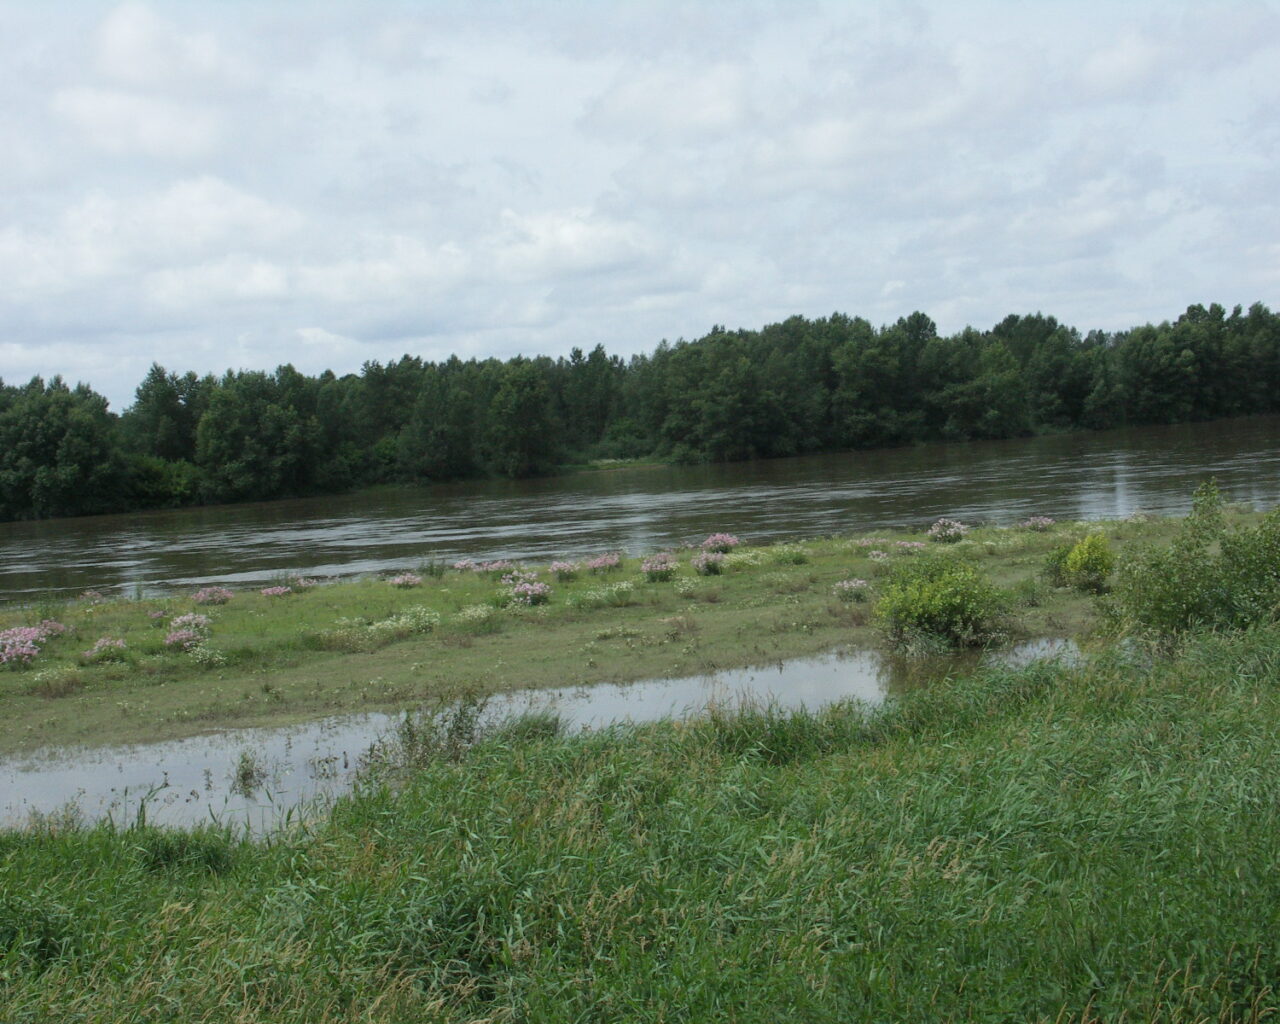 15 La Loire. Quand ses eaux dorment l'été, la nature sort de son lit, relevant ici et là de petits îlots d'une belle mosaïque de verdure